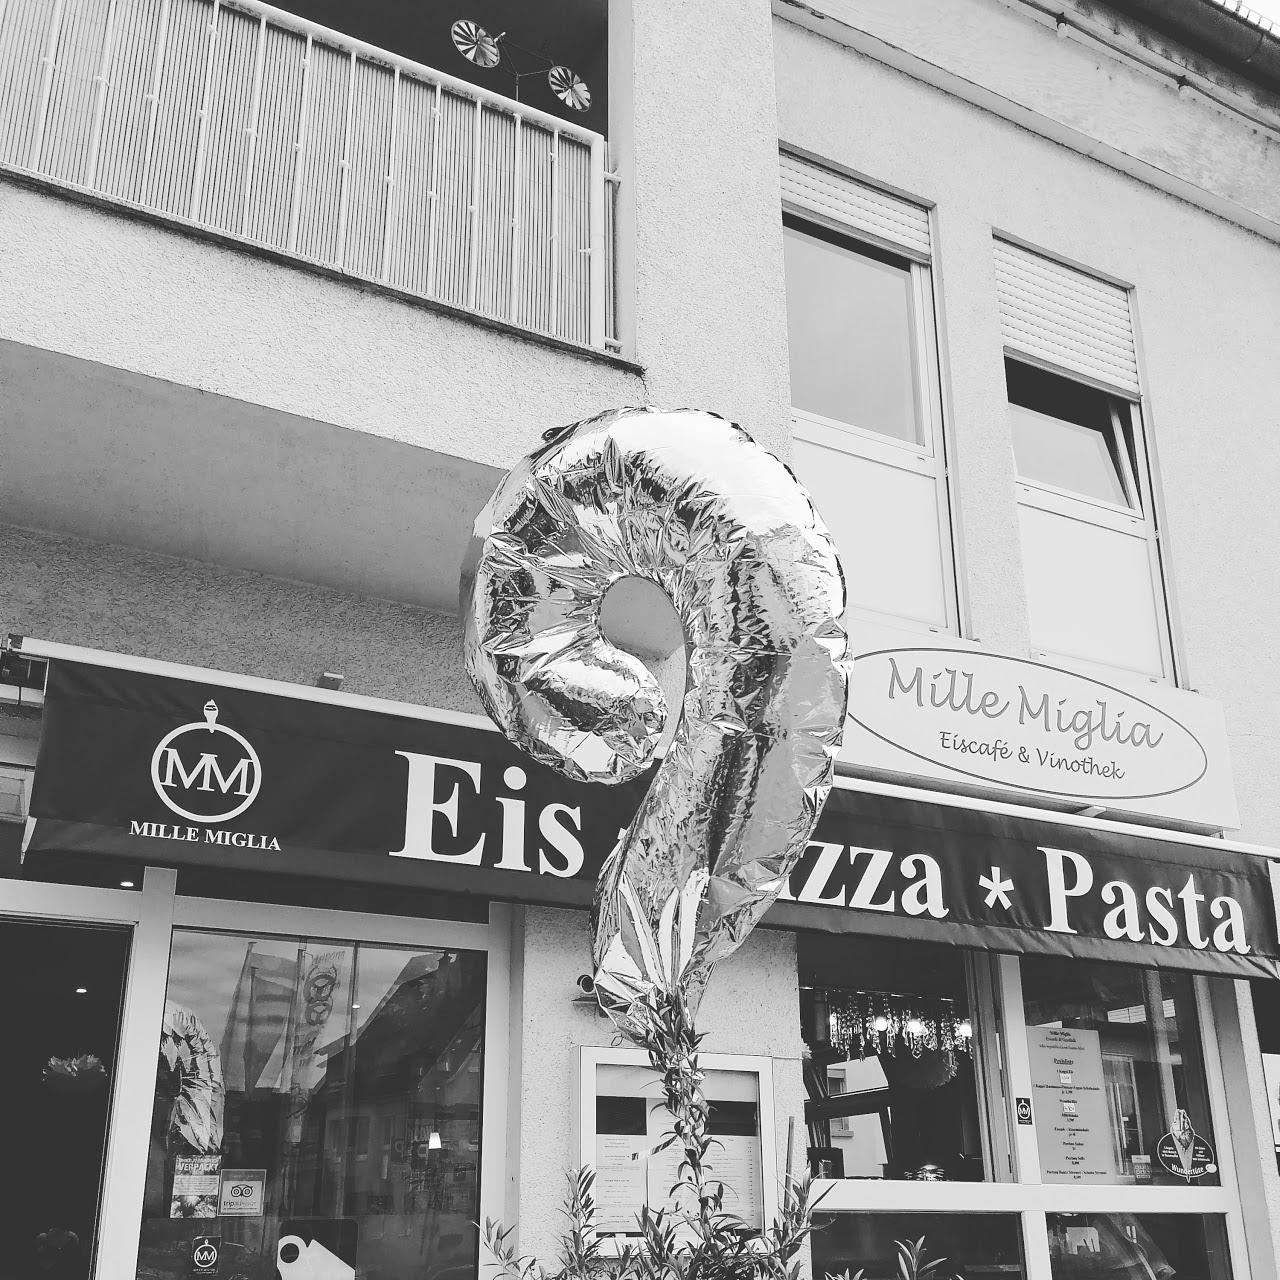 Restaurant "Eiscafé und Ristorante Mille Miglia" in Murr